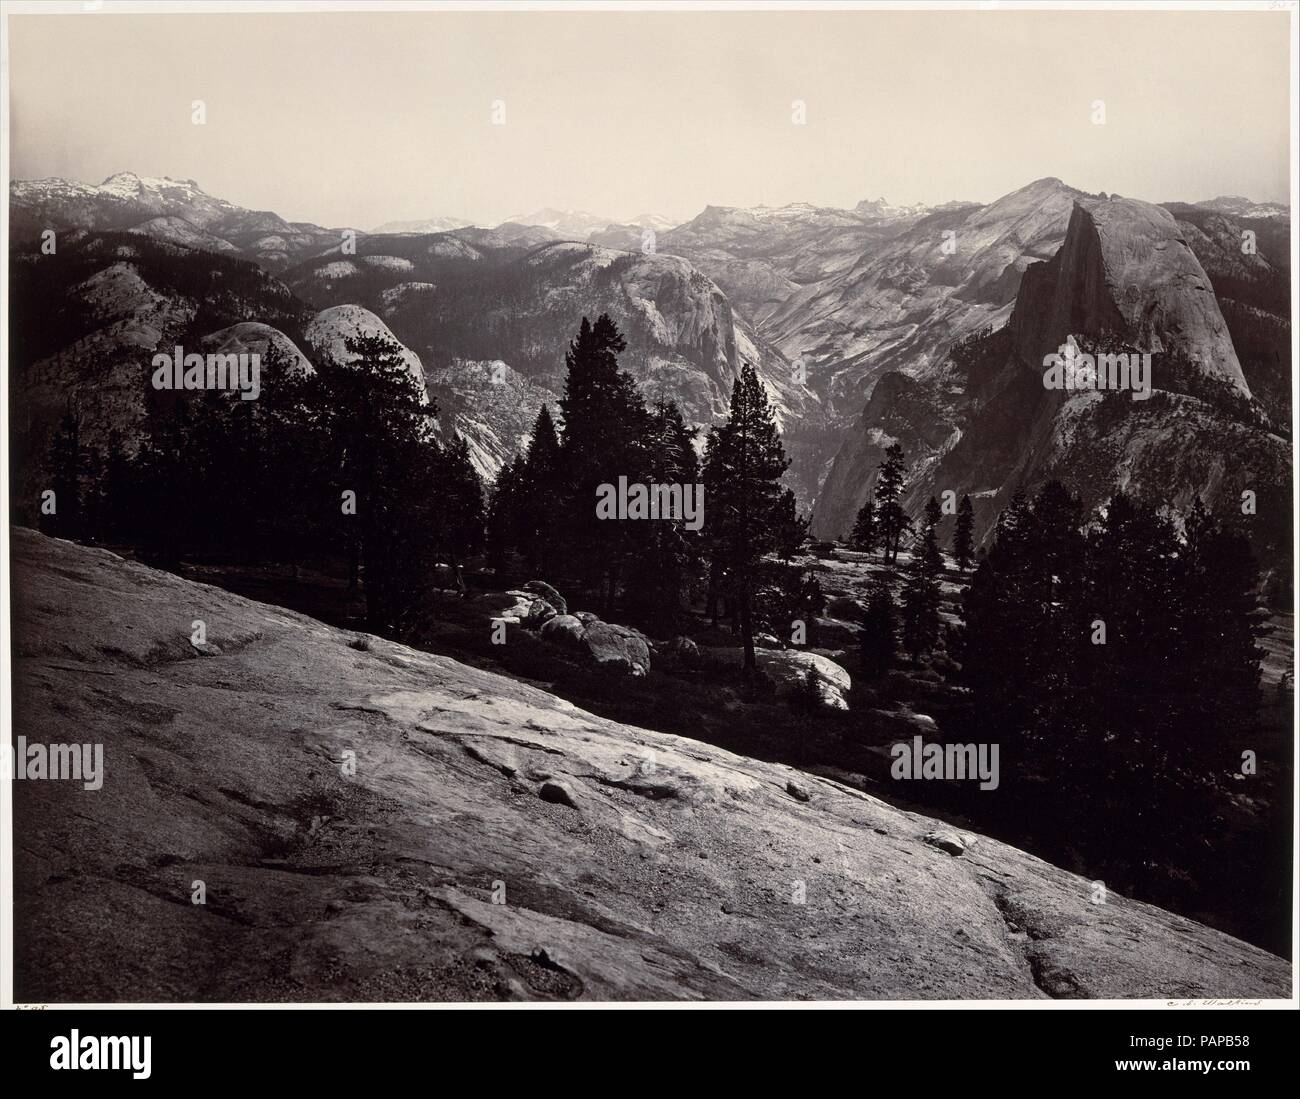 Vista dalla cupola sentinella, Yosemite. Artista: Carleton E. Watkins (American, 1829-1916). Dimensioni: Immagine 1: 40,3 × 52,1 cm (15 7/8 × 20 1/2 in.) Montare 1: 53,4 x 68.7cm (21 x 27 1/16in.) l'immagine 2: 40,0 x 52,5 cm (15 3/4 x 20 11/16 in.) Montare 2: 53,3 x 68.8cm (21 x 27 1/16in.) immagine 3: 40,8 x 52,5 cm (16 1/16 x 20 11/16in.) Montare 3: 53,2 x 68.7cm (20 15/16 x 27 1/16 poll.). Data: 1865-66. Carleton Watkins ha reso il suo nome con vedute della valle di Yosemite, che ha fotografato più volte su un periodo di venti anni, con inizio nel 1861. Da quel tempo egli era un praticante di virtuoso della difficile bagnato Foto Stock